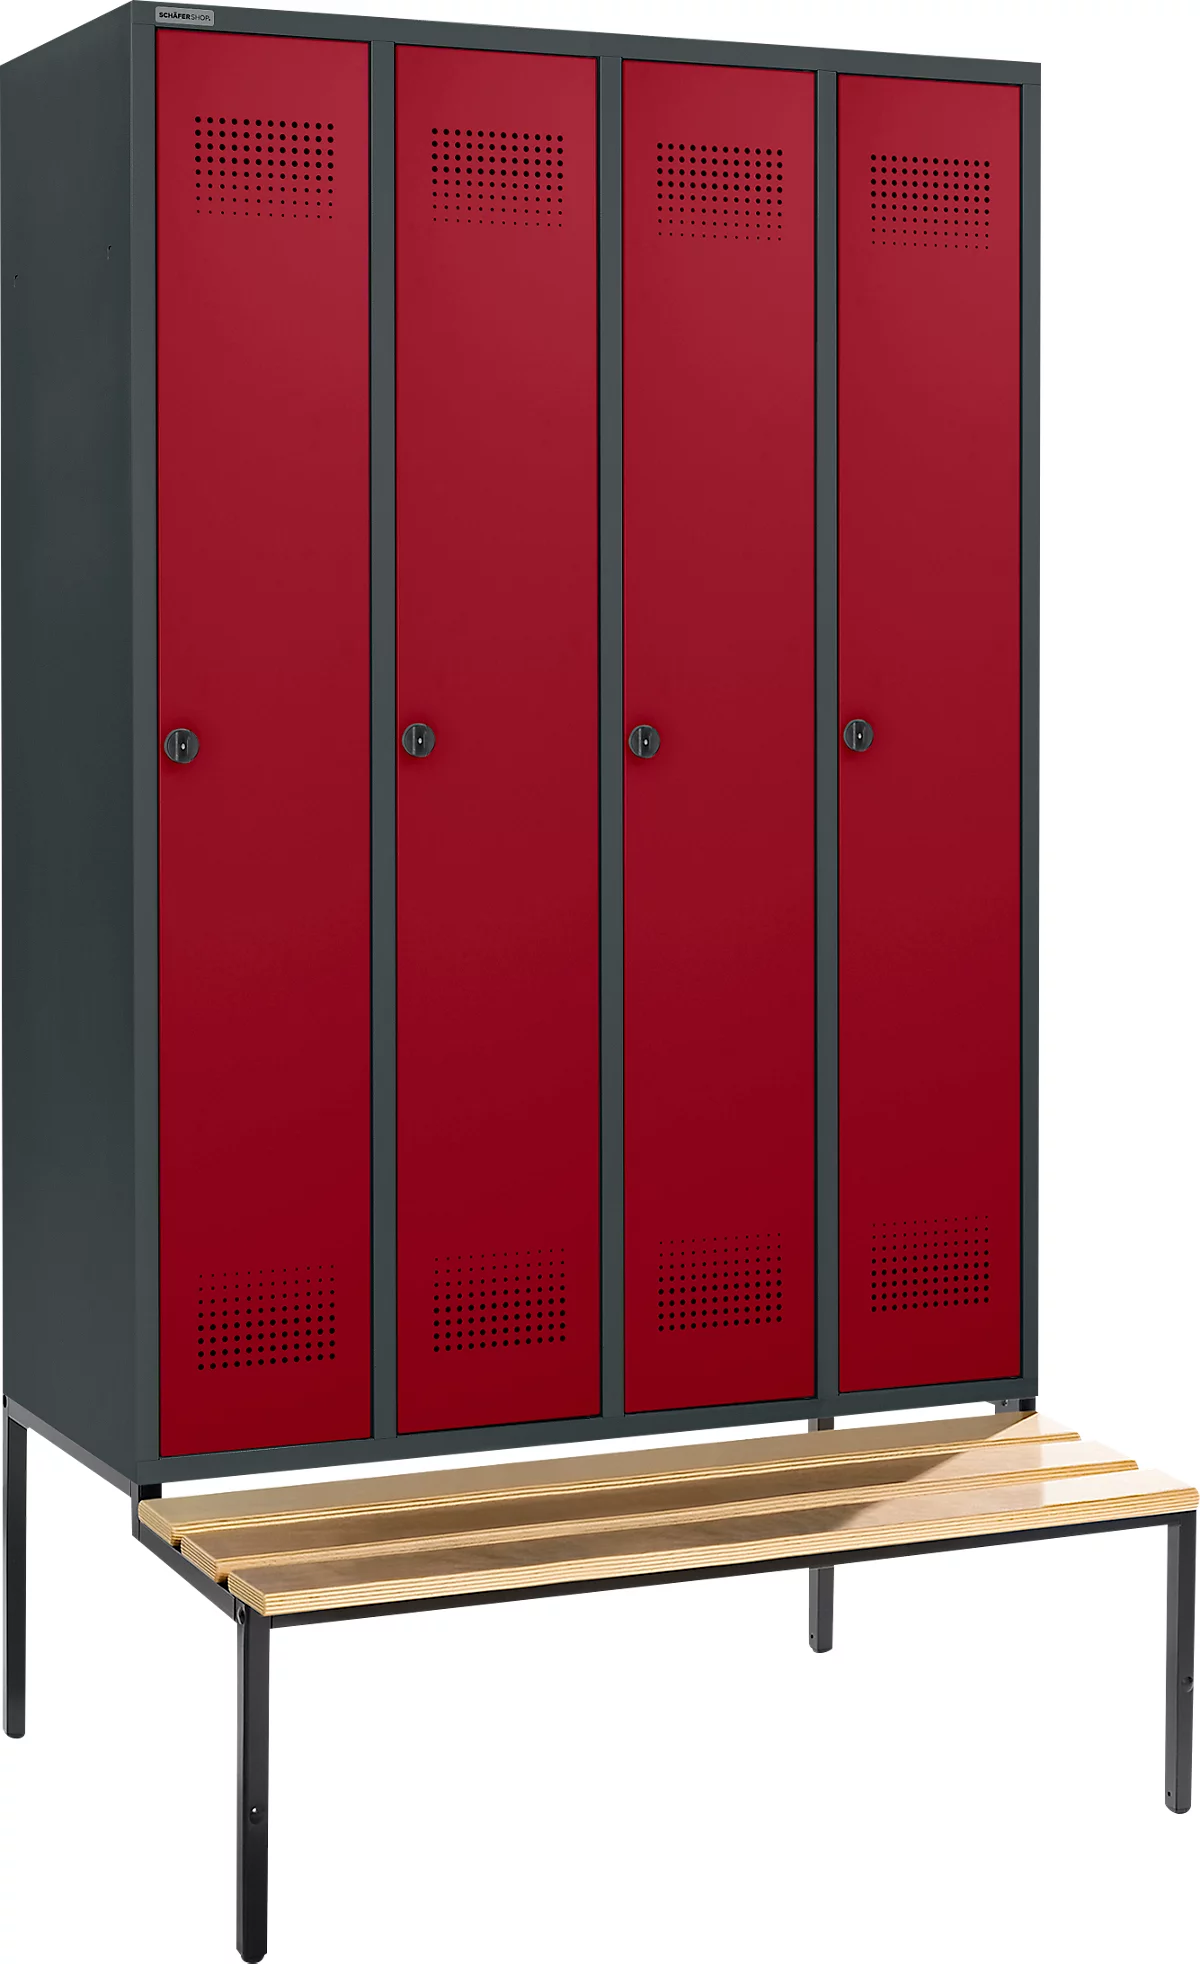 Schäfer Shop Genius Taquilla con banco, 4 compartimentos, anchura compartimento 300 mm, cierre de pasador giratorio de seguridad, antracita/rojo rubí